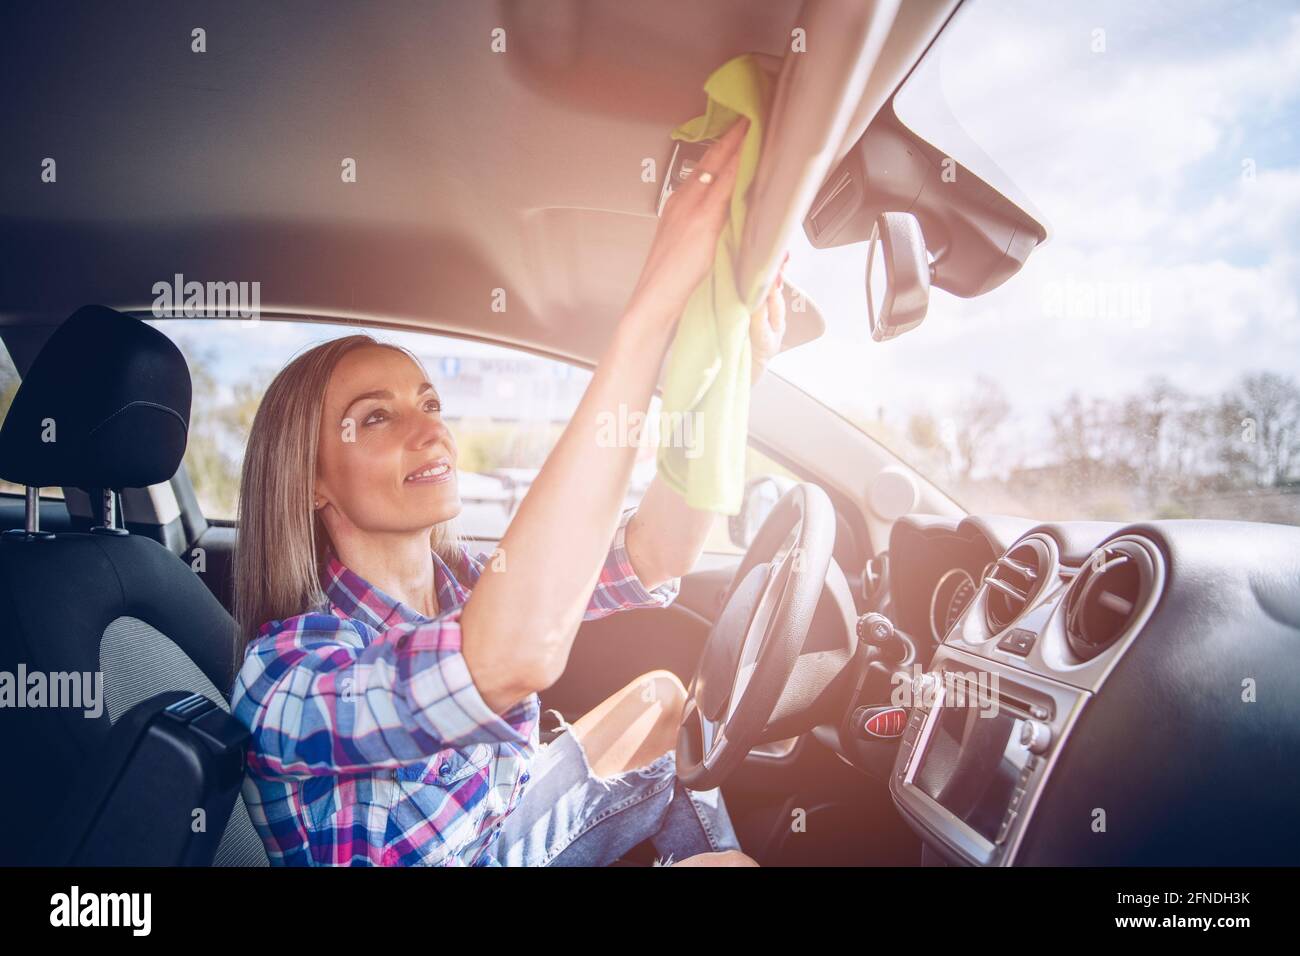 Eine Frau in Kariertem Hemd Reinigt Die Innenseite Des Autos Mit Einem  Mikrofasertuch. Stockbild - Bild von tür, innere: 219632113